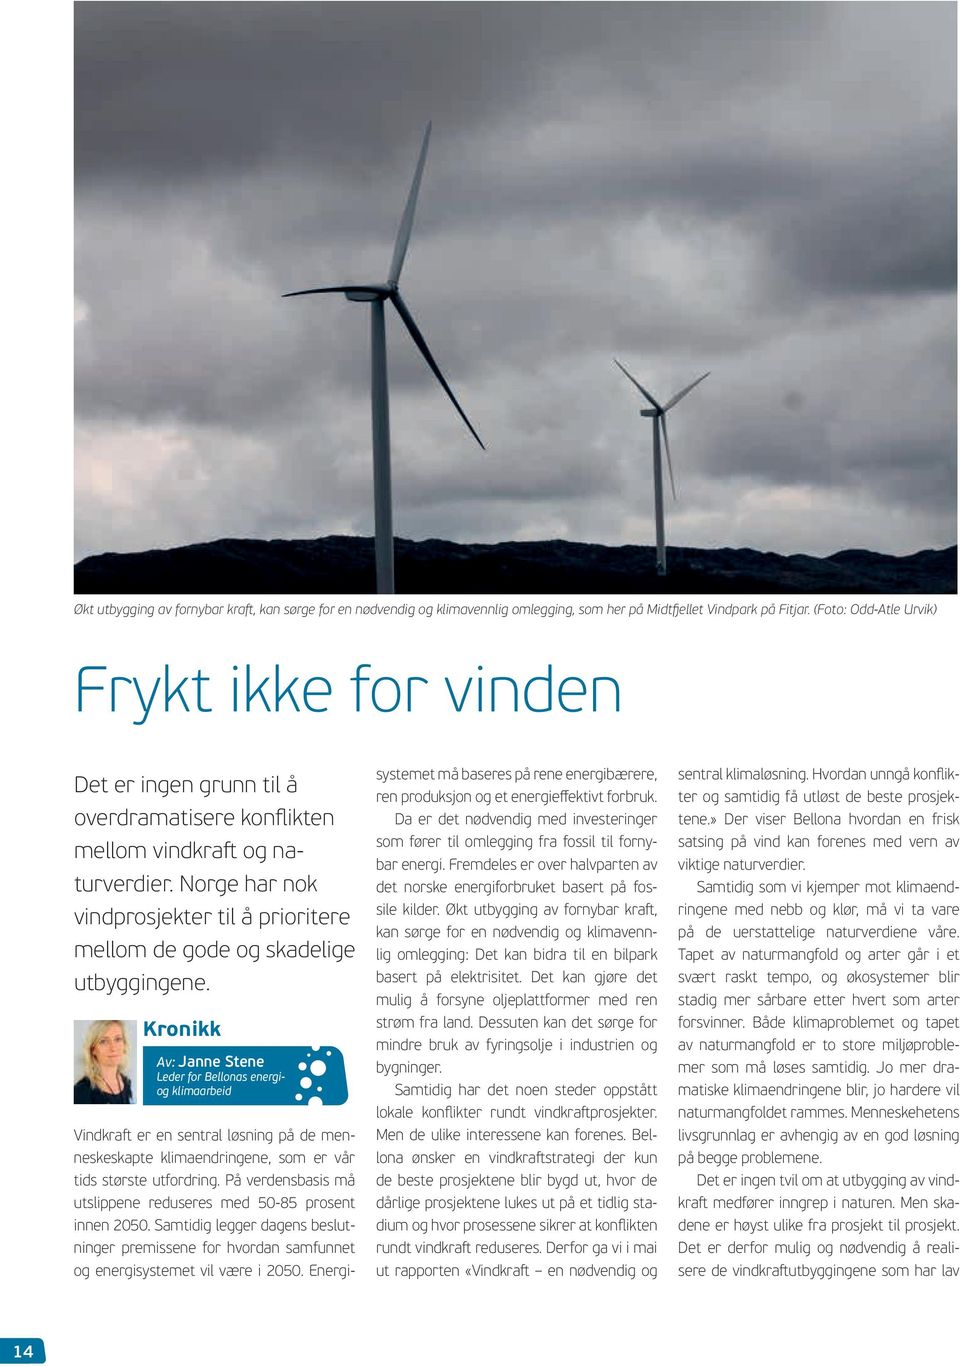 Norge har nok vindprosjekter til å prioritere mellom de gode og skadelige utbyggingene.